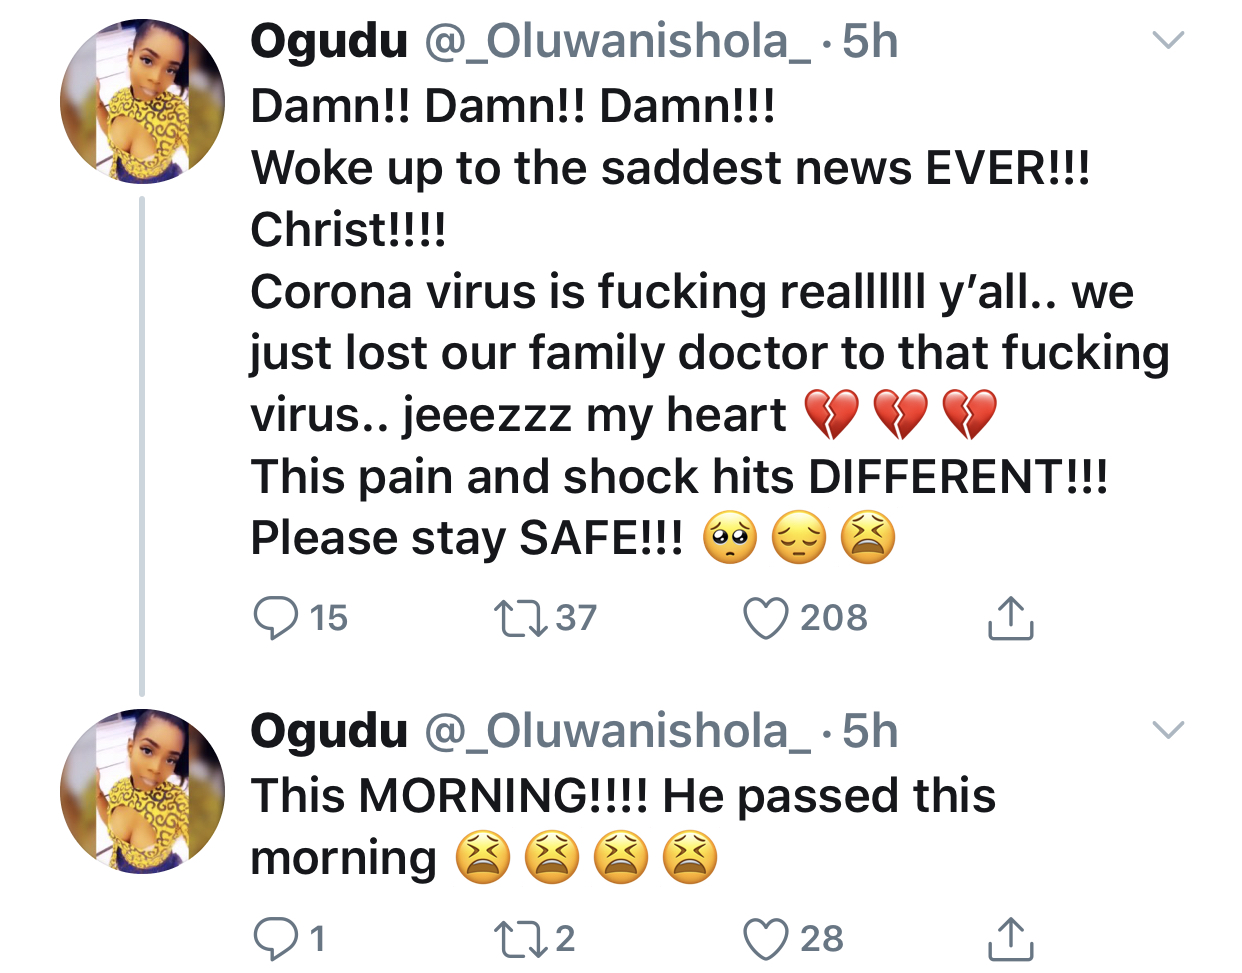 Ogudu’s tweet